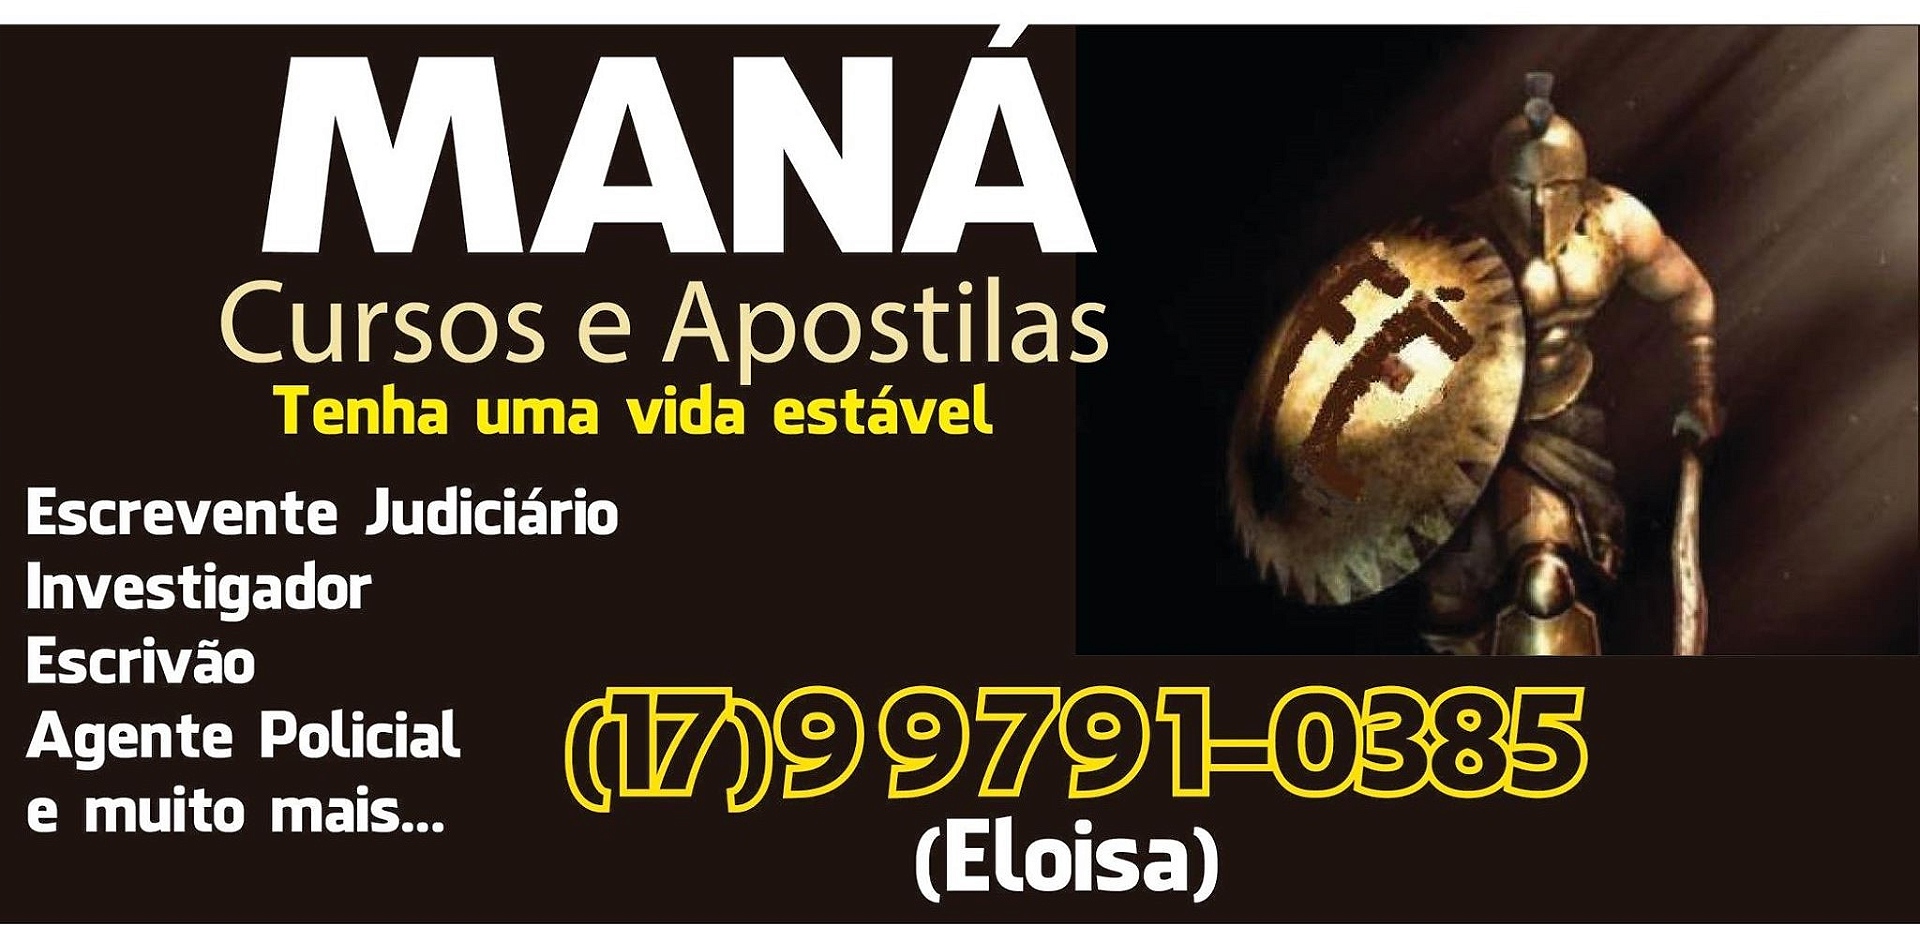 MANÁ - CURSOS E APOSTILAS